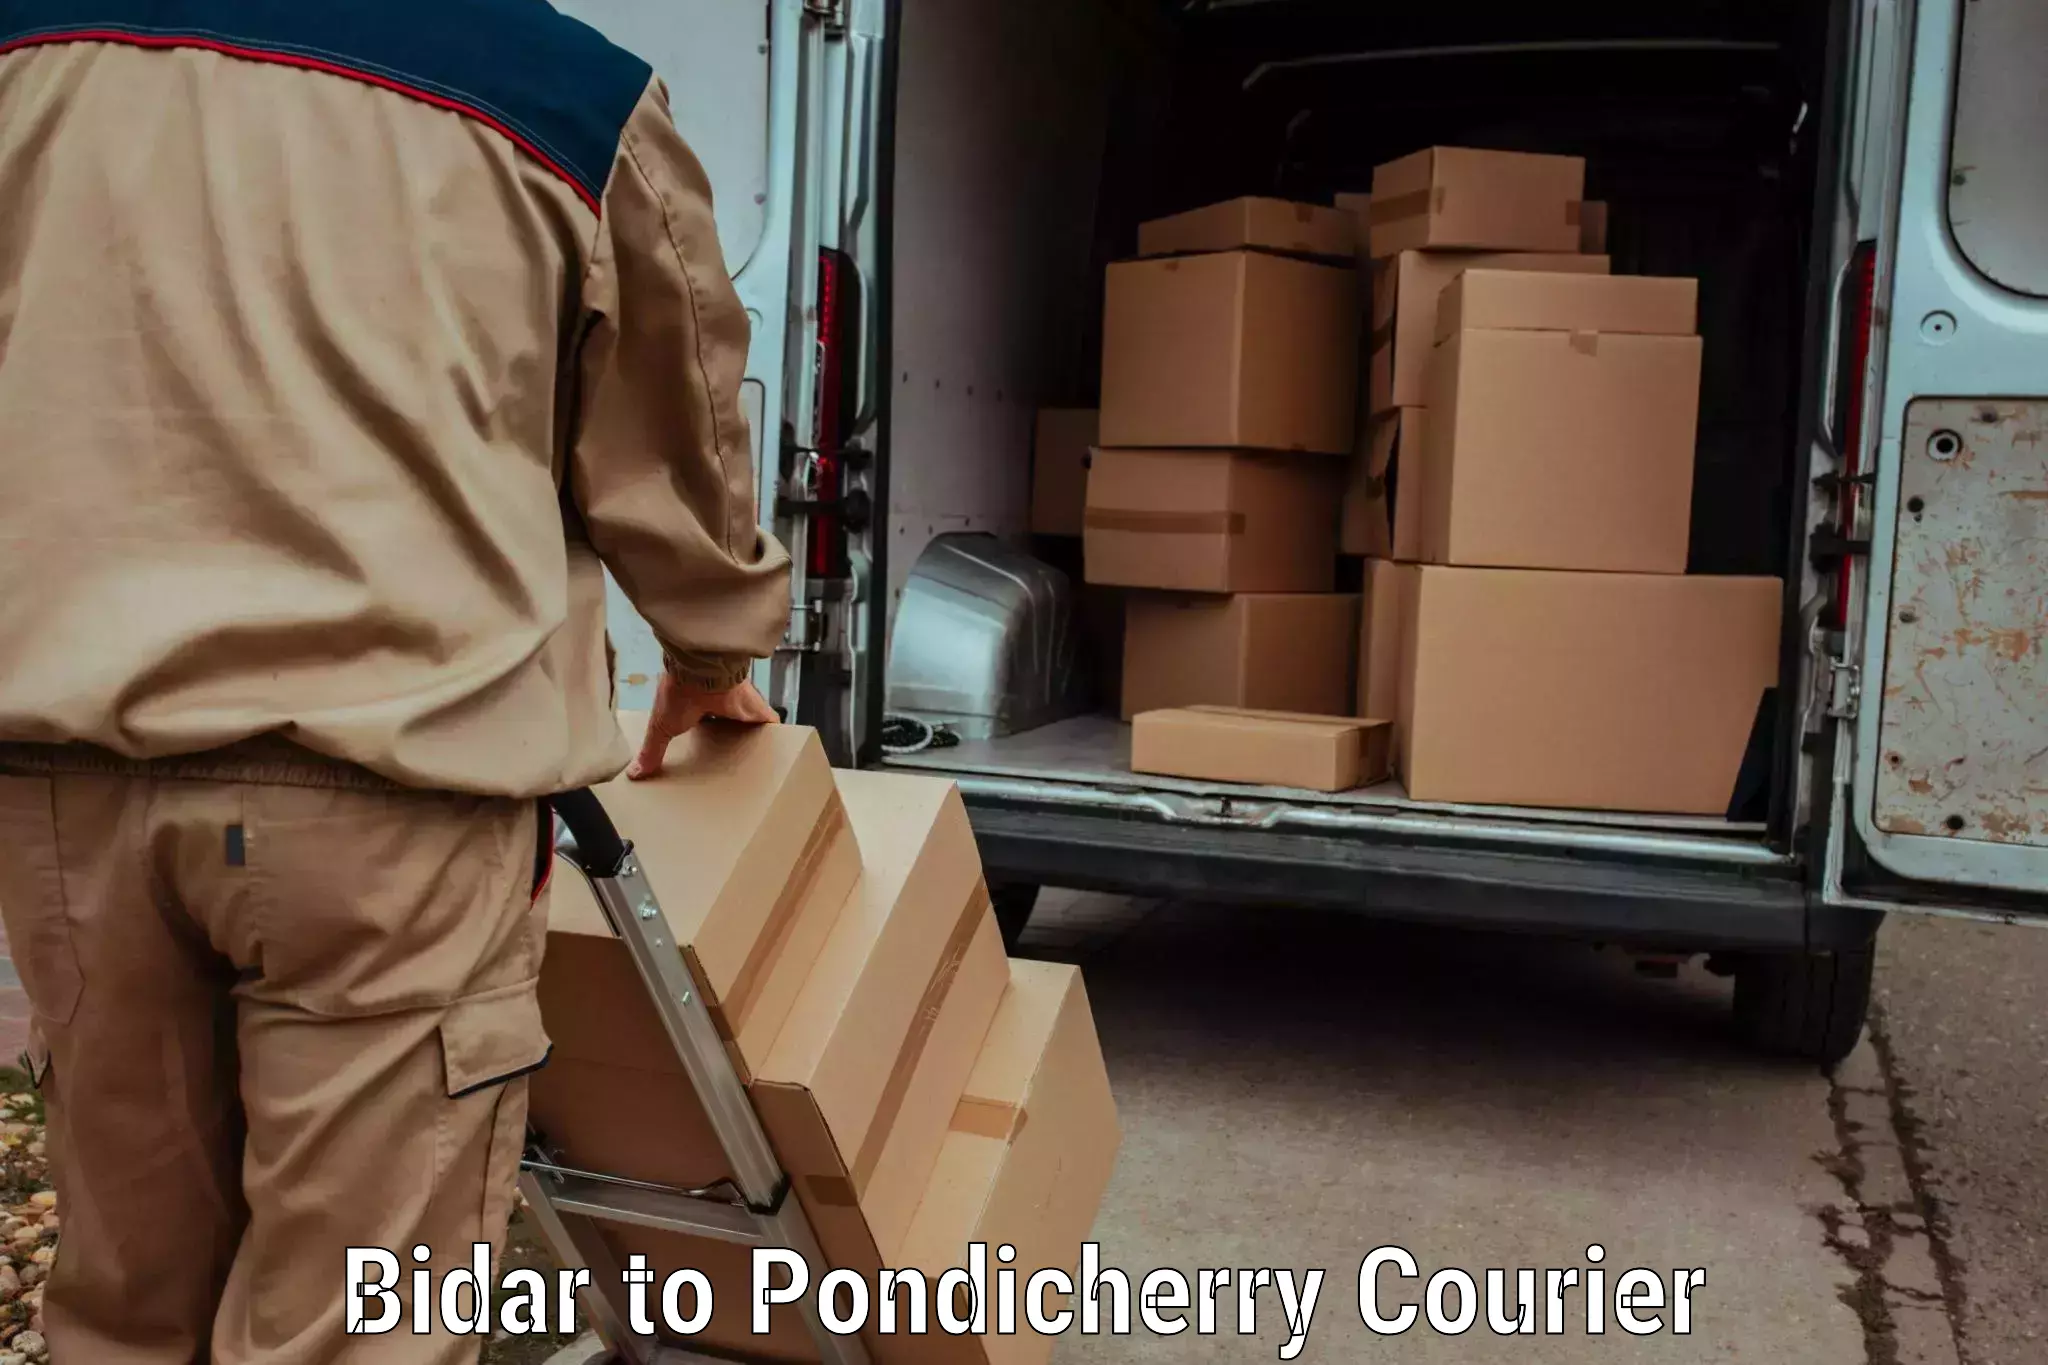 Reliable parcel services Bidar to Pondicherry